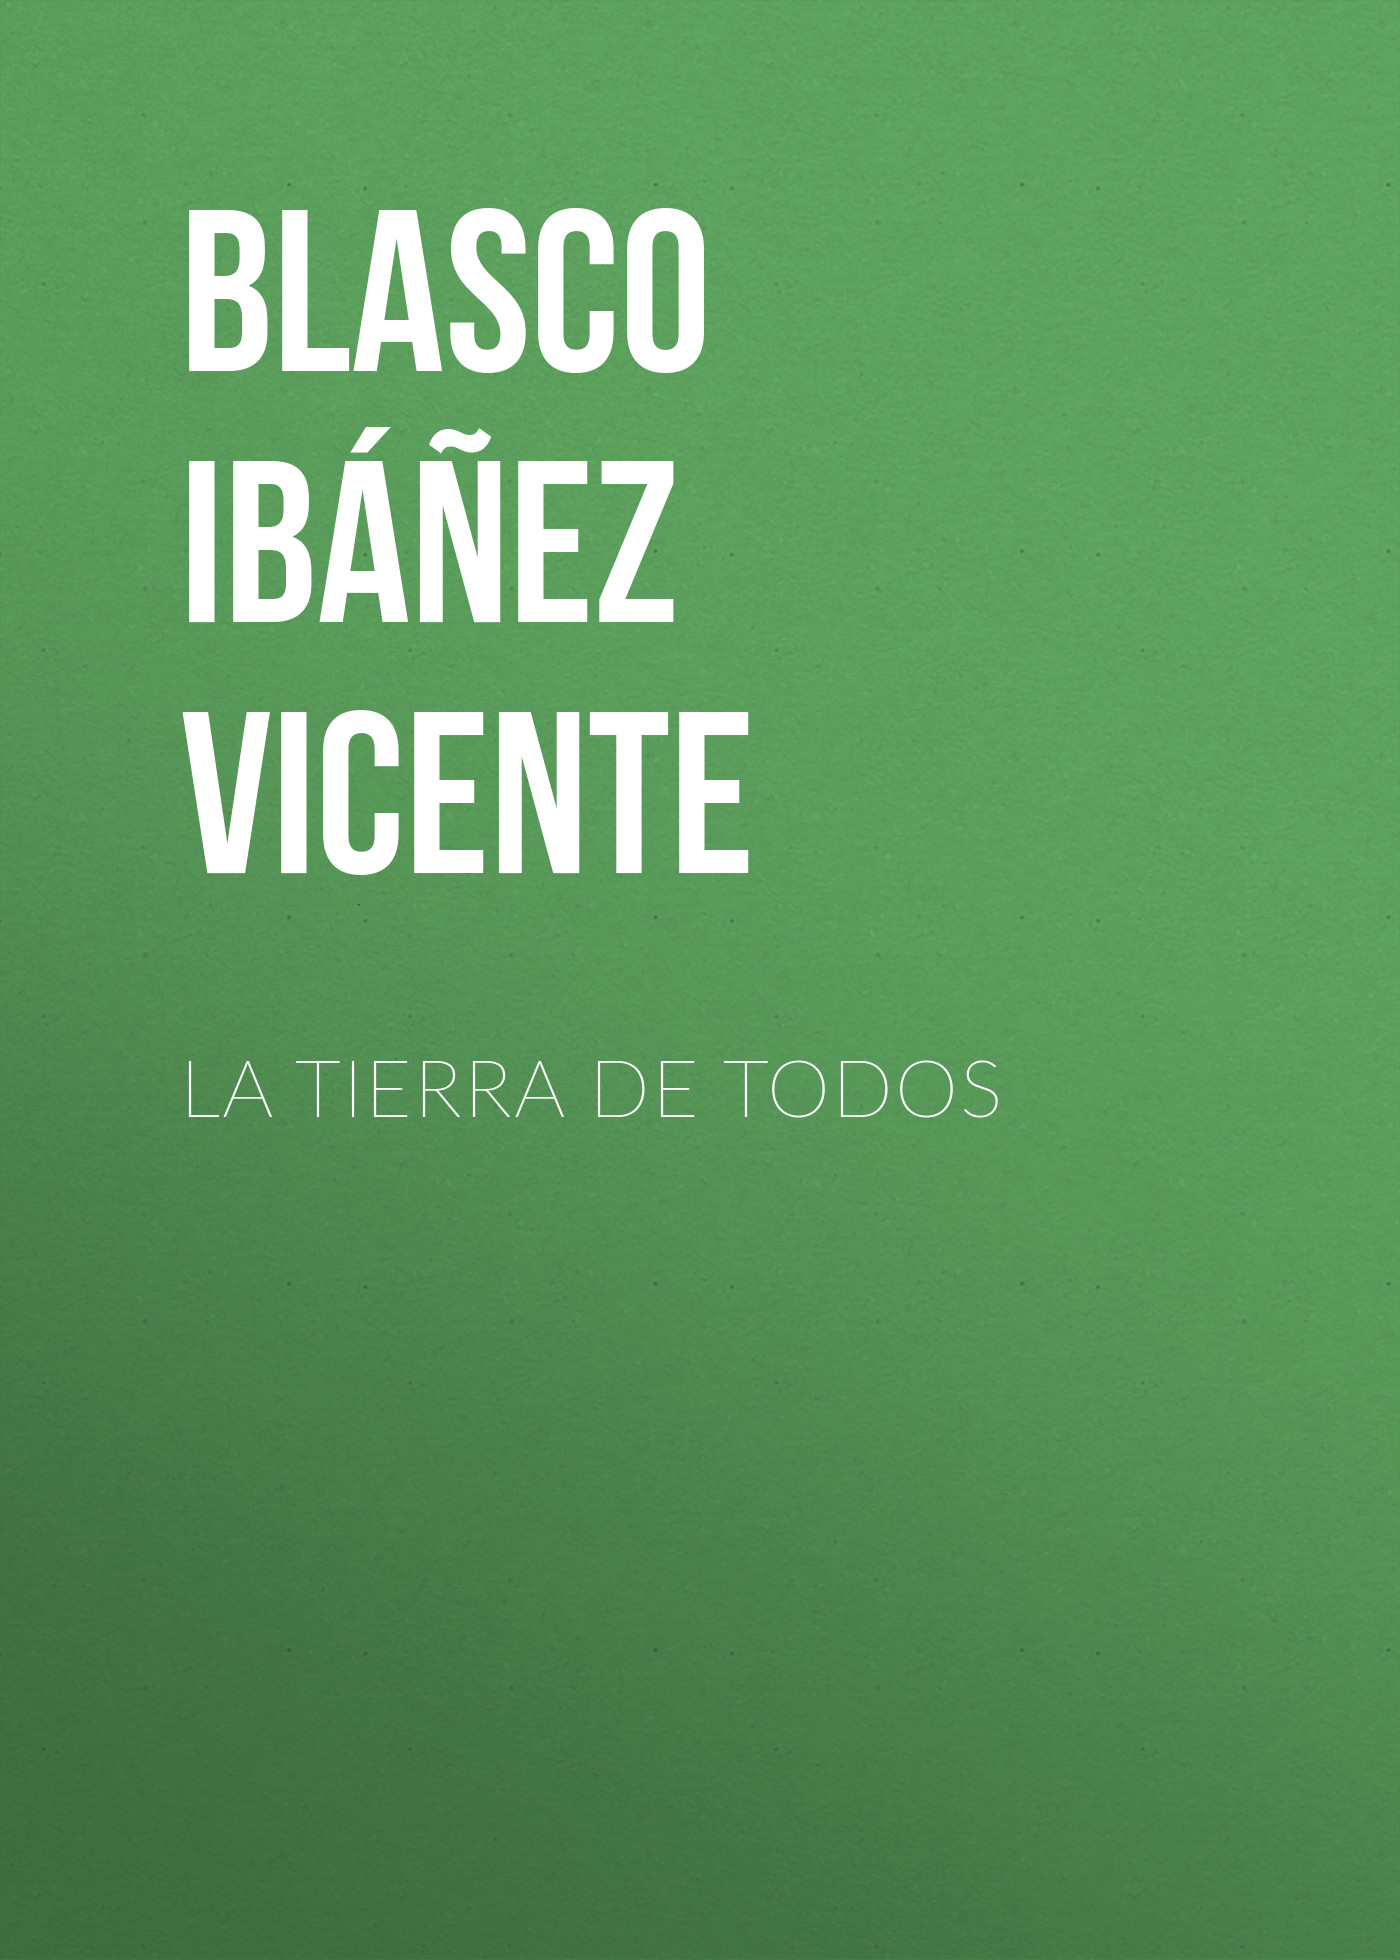 Книга La Tierra de Todos из серии , созданная Vicente Blasco Ibáñez, может относится к жанру Зарубежная классика, Зарубежная старинная литература. Стоимость электронной книги La Tierra de Todos с идентификатором 36364094 составляет 0 руб.